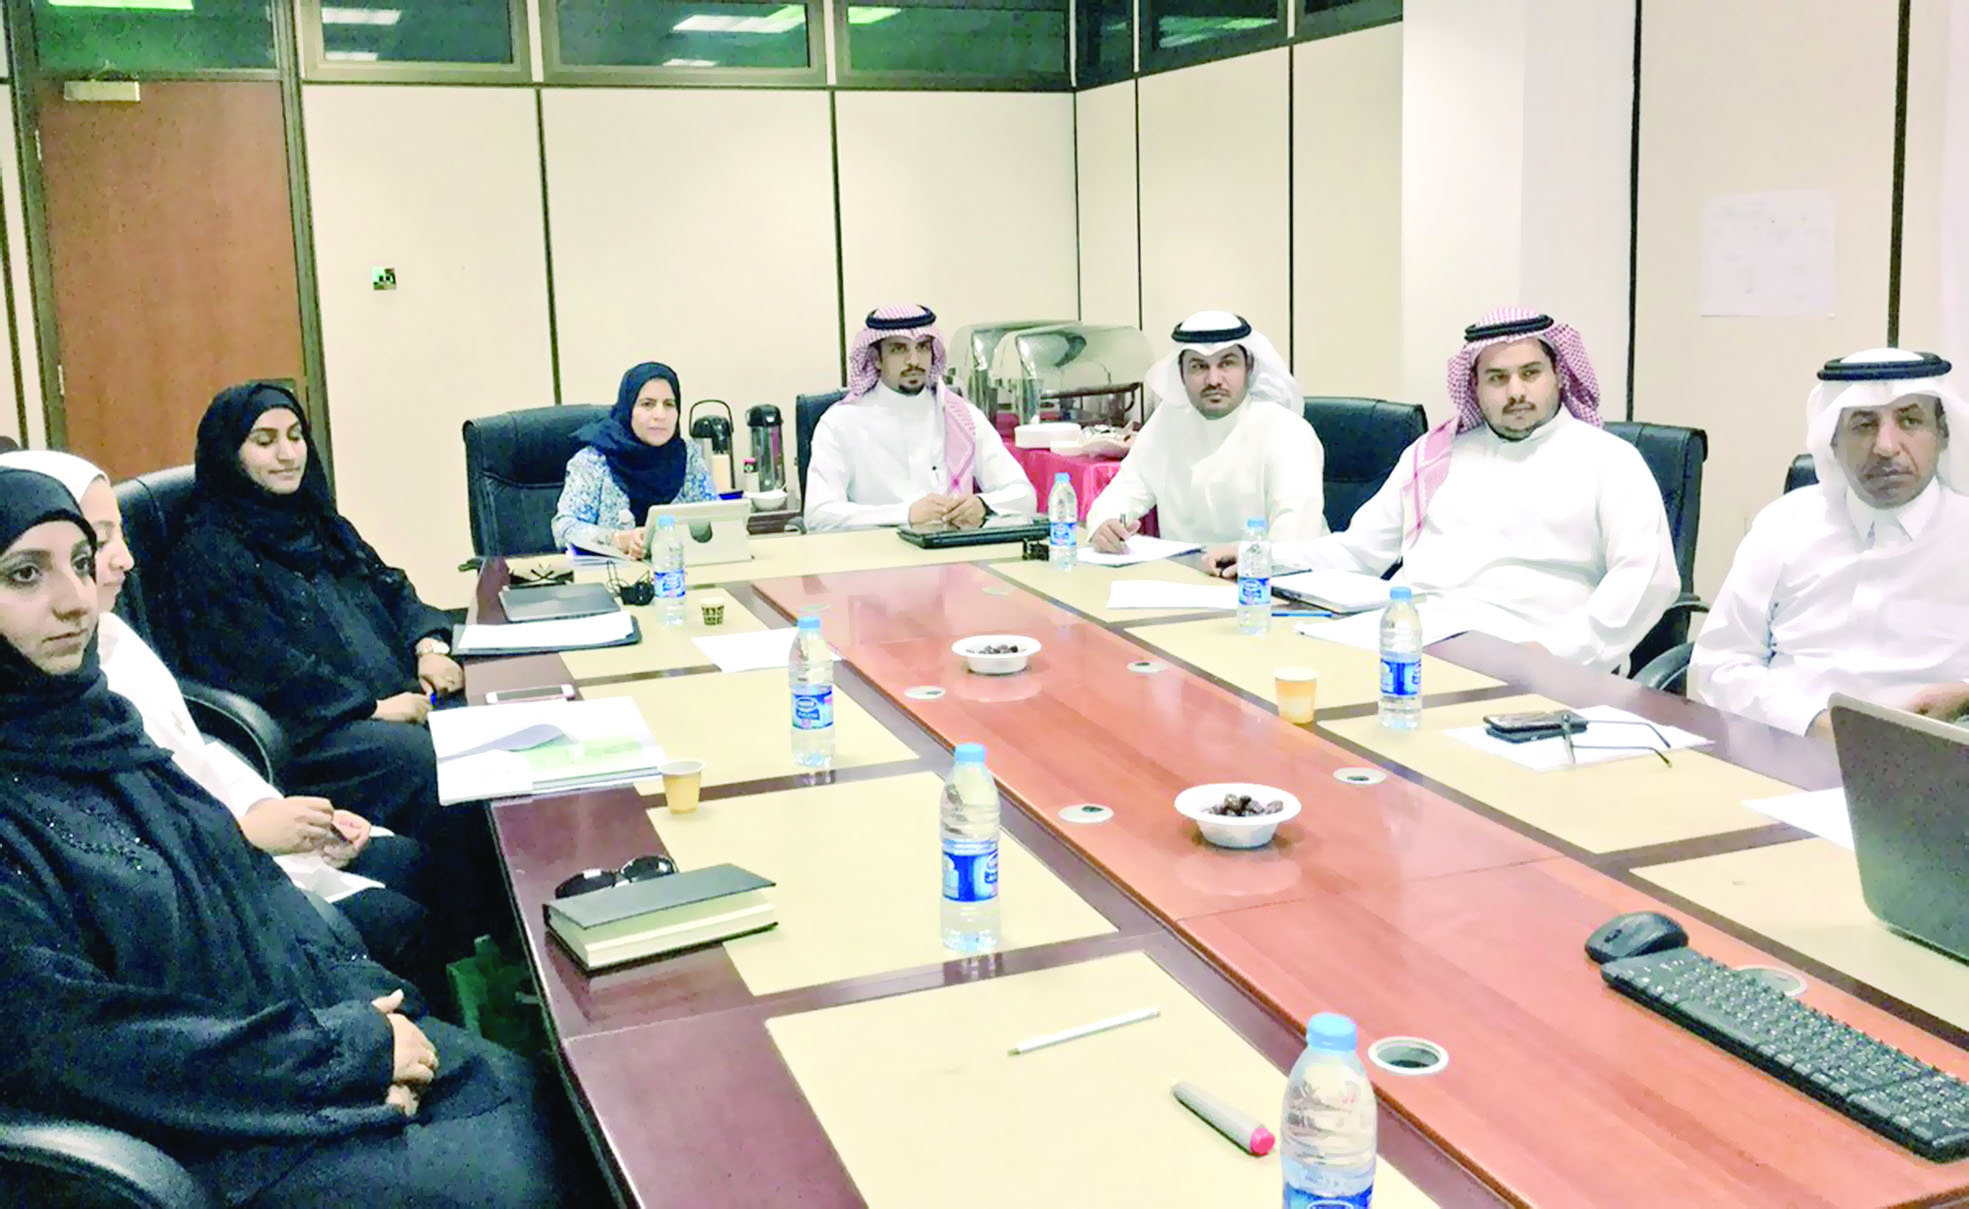 تعقد اجتماعها الـ24 في مسقطالسلطنة تترأس «الفنيّة الخليجيّة» للتقييس